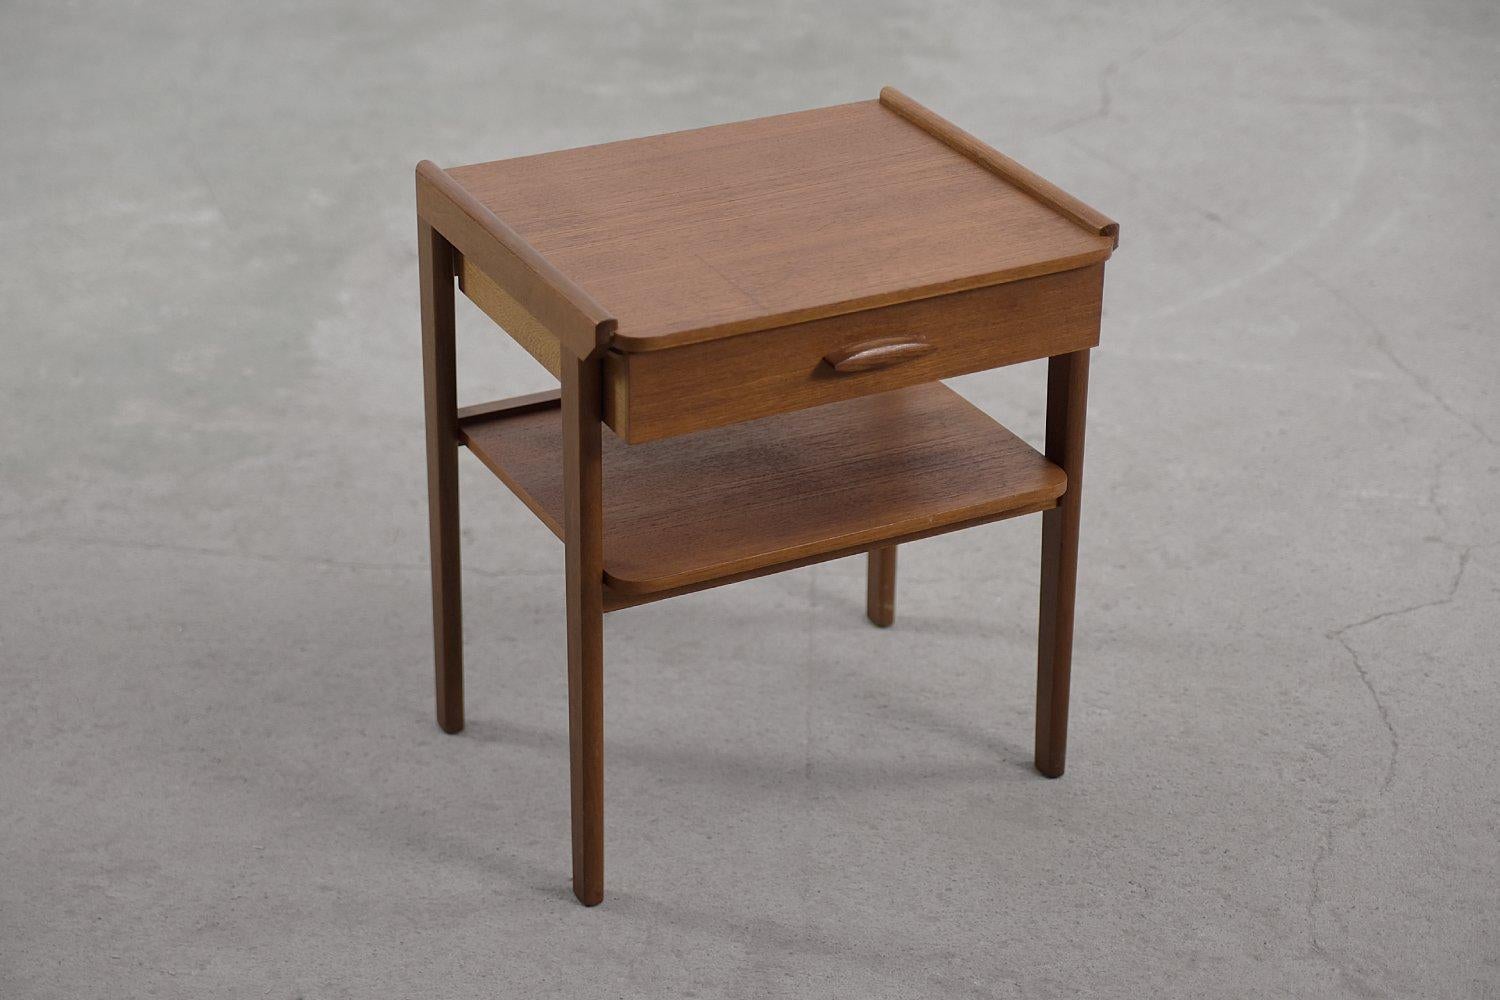 Dieser modernistische Nachttisch wurde in den 1950er Jahren in Schweden hergestellt. Es ist mit Teakholz in honigbrauner Farbe gefertigt. Diese Holzart hat einen hohen Gehalt an natürlichen Ölsubstanzen, was sie sehr wasserbeständig macht. Der